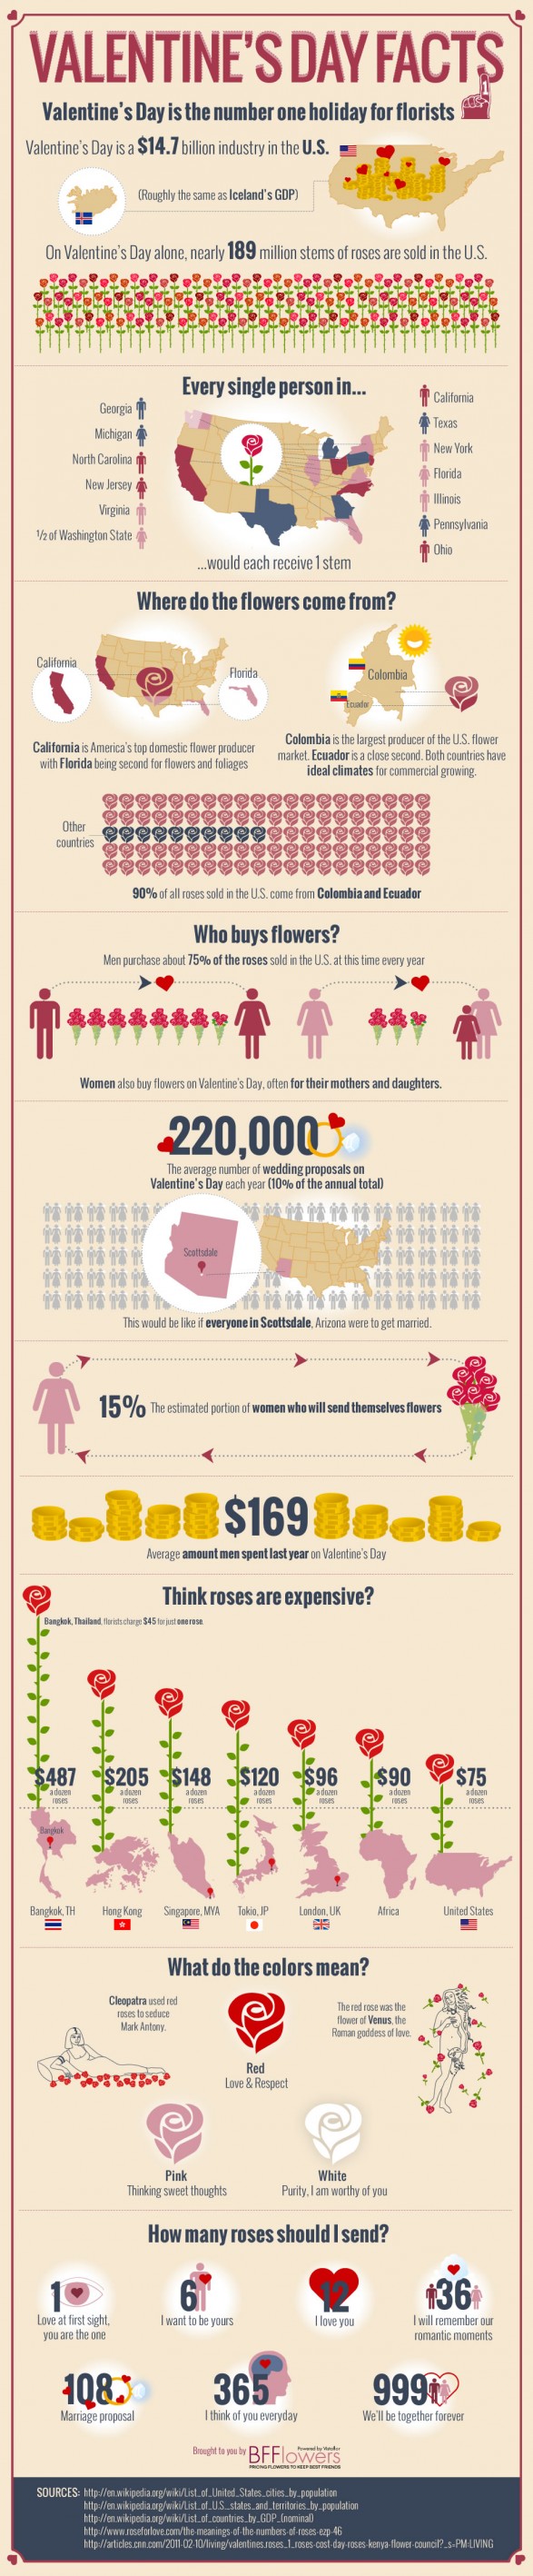 Valentine's Day Facts Info Gaphic